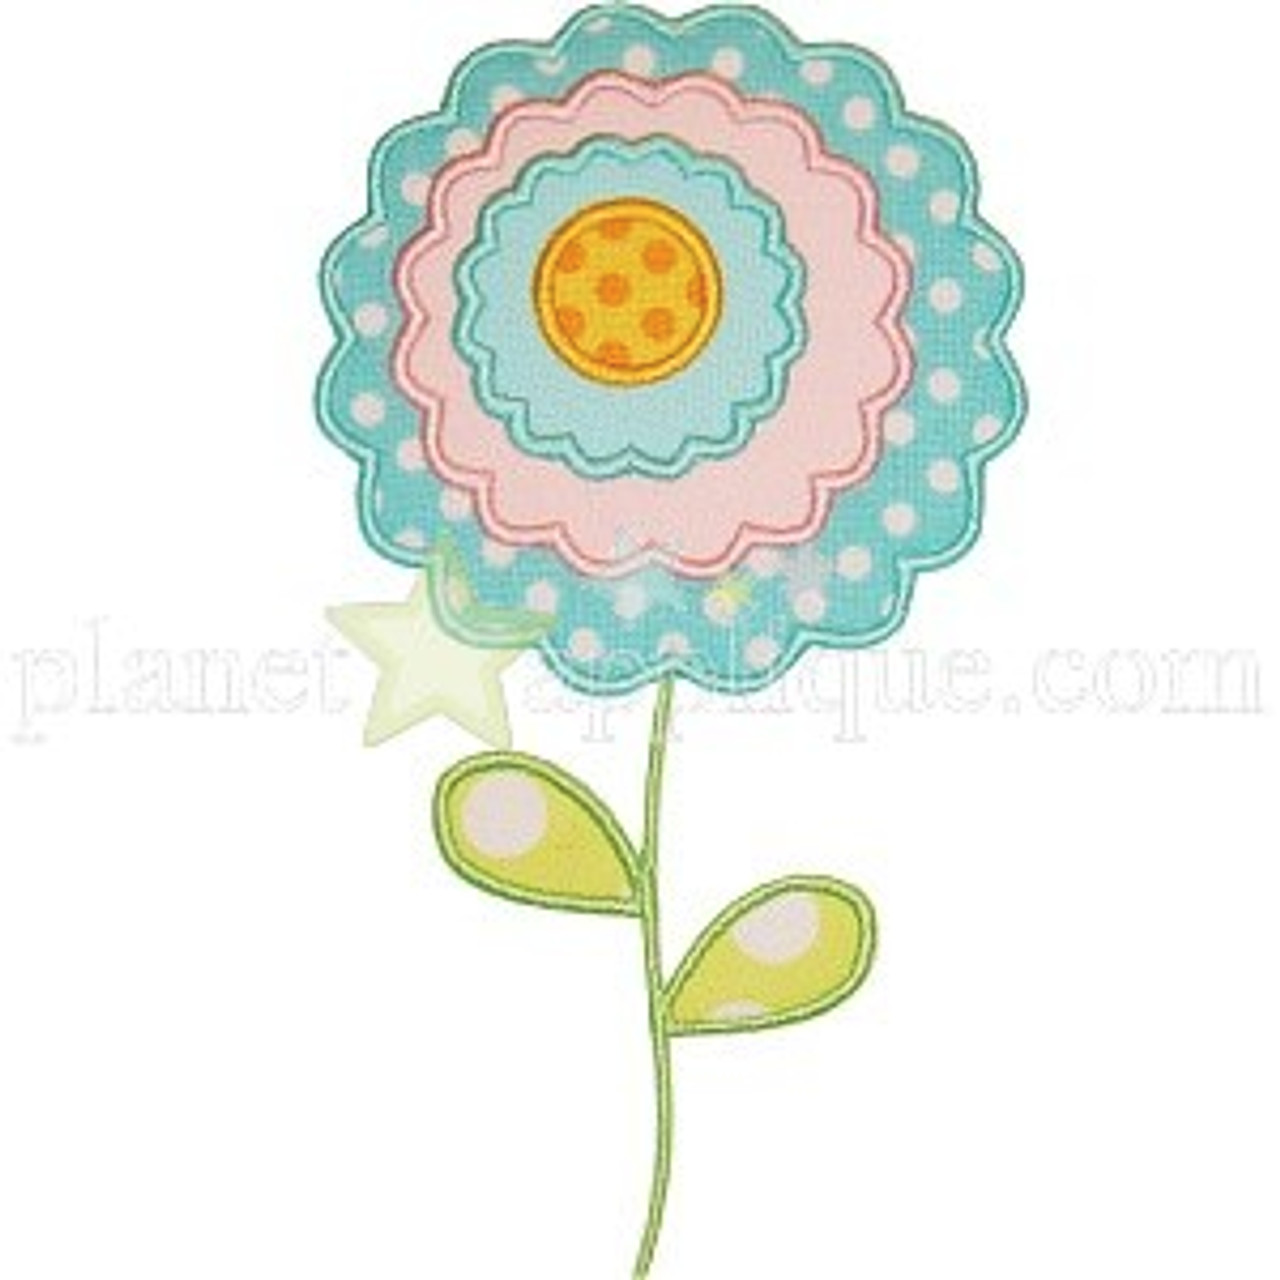 Woodland flower appliqué design - Machine Embroidery Geek